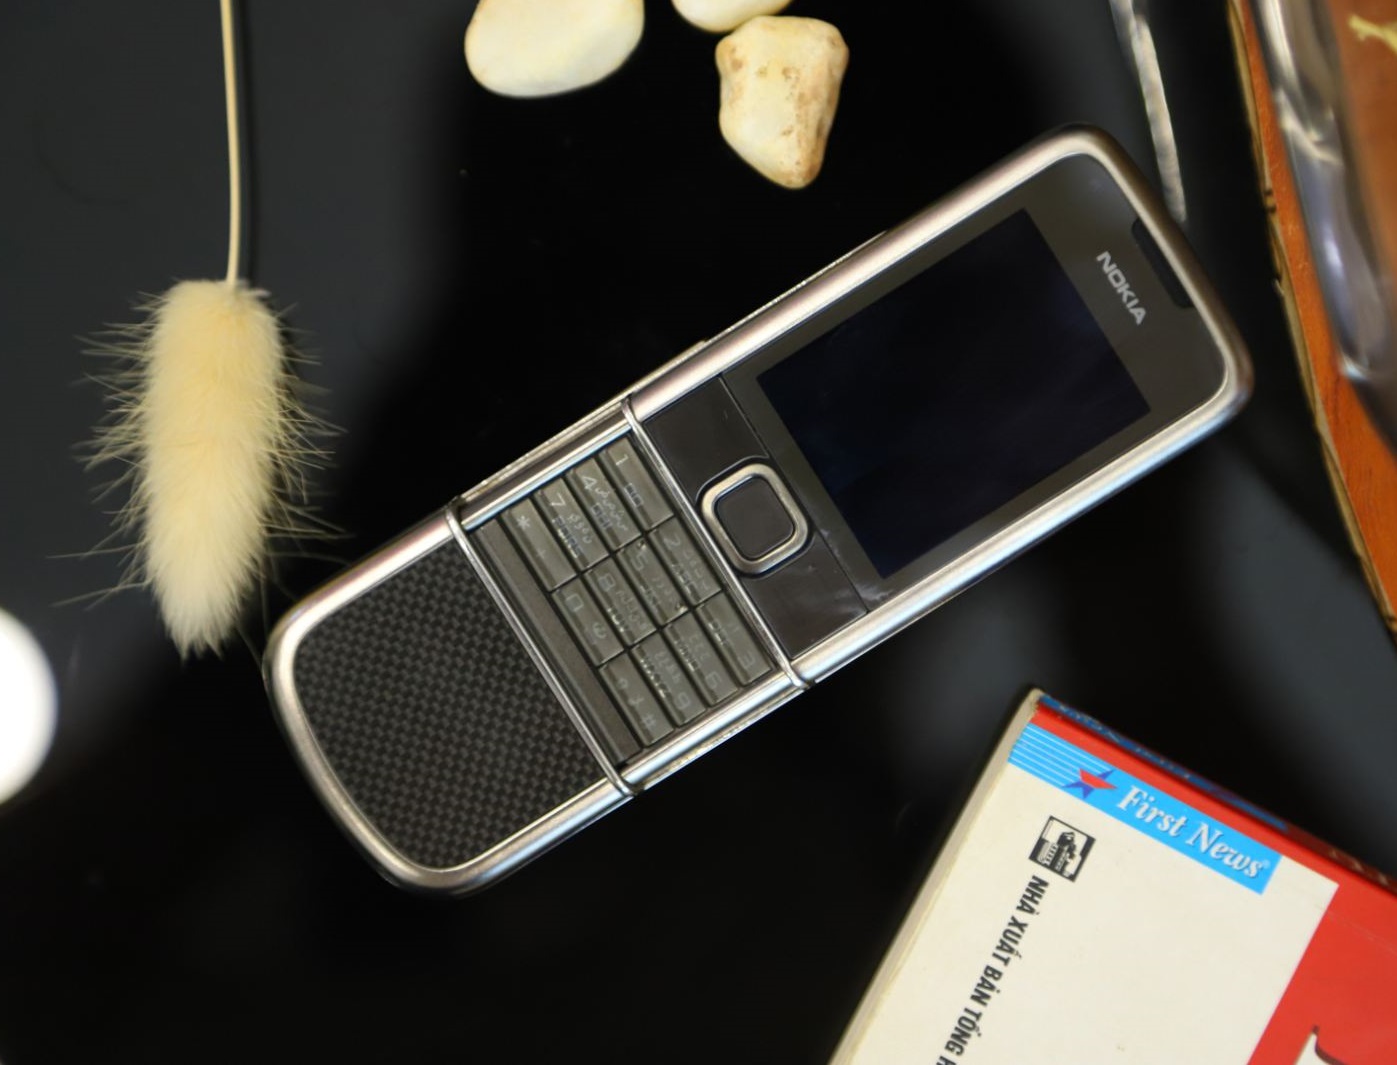 Nokia 8800E Carbon Arte 4G Zin Hình Thức 96%: Với hình thức gần như mới, Nokia 8800E Carbon Arte 4G Zin Hình Thức 96% sẽ là một sự lựa chọn tuyệt vời cho những ai muốn sở hữu một chiếc điện thoại chất lượng cao với giá cả hợp lý. Đừng bỏ lỡ cơ hội xem hình ảnh chi tiết của sản phẩm này.